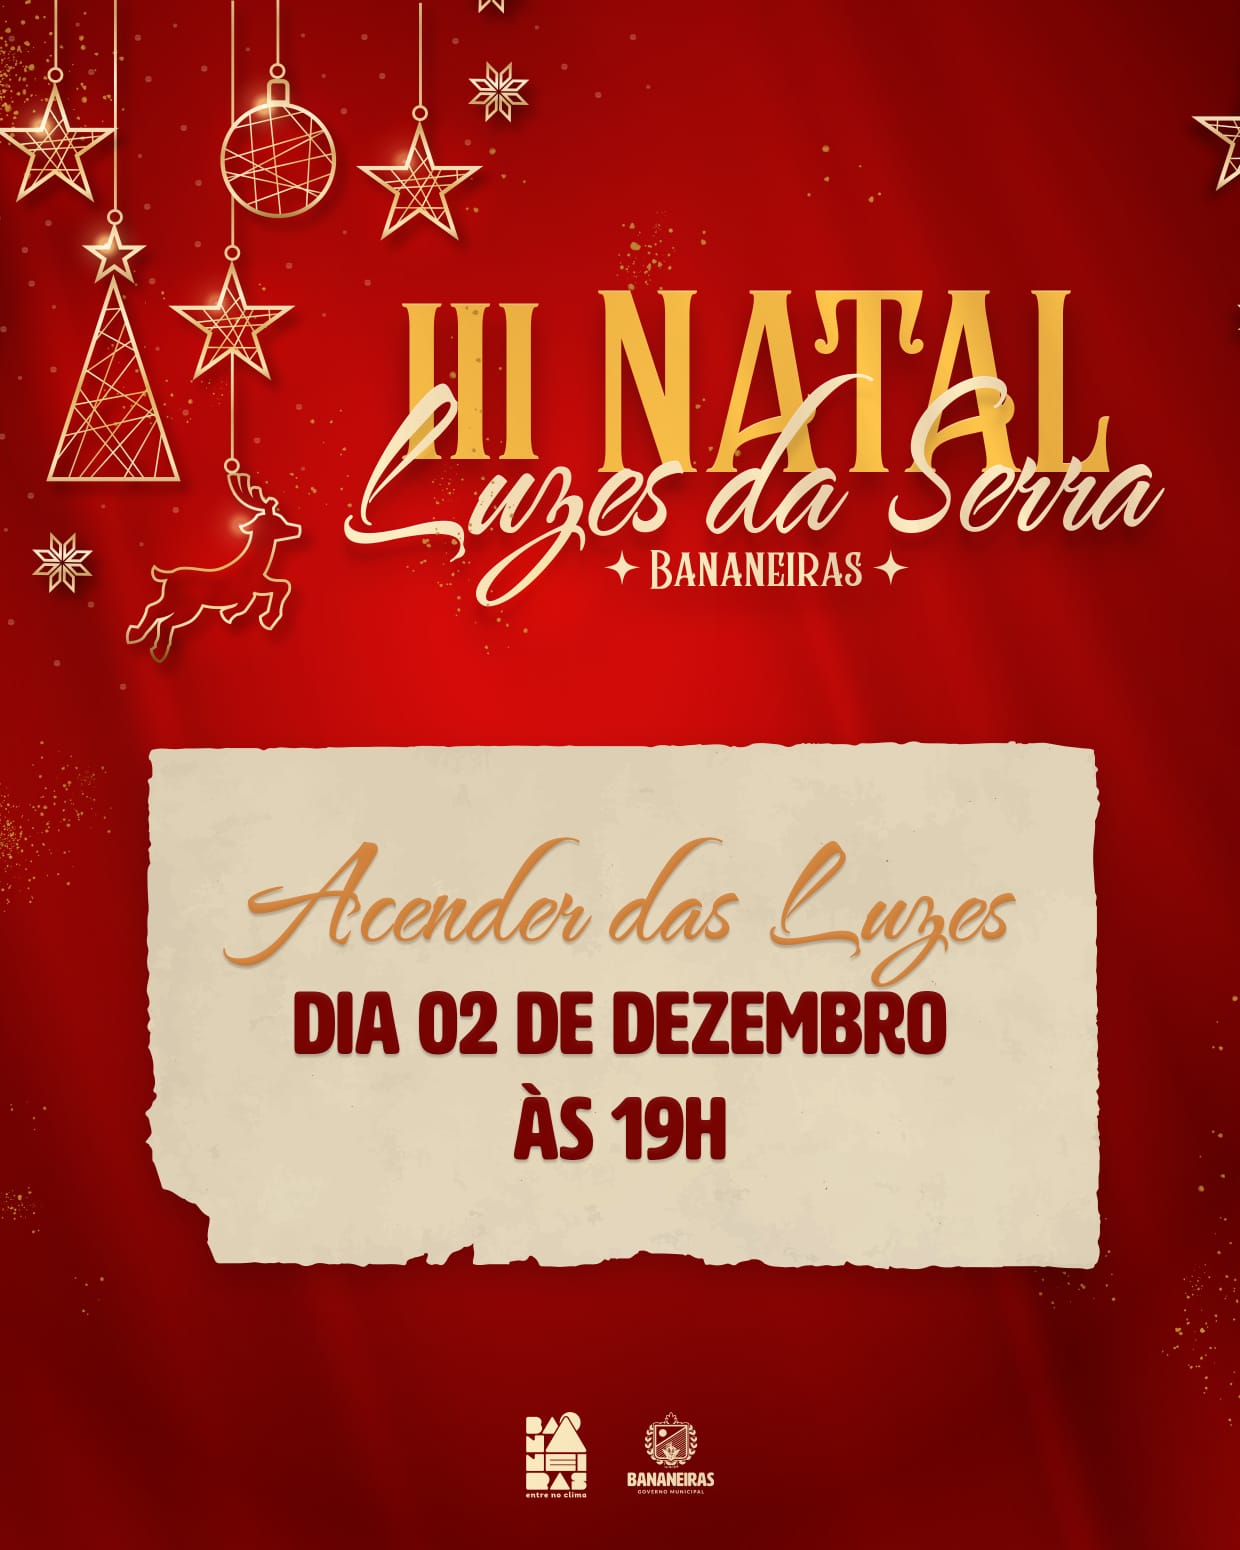 3ª Edição do Natal Luzes da Serra terá acender das luzes no dia 02 de dezembro